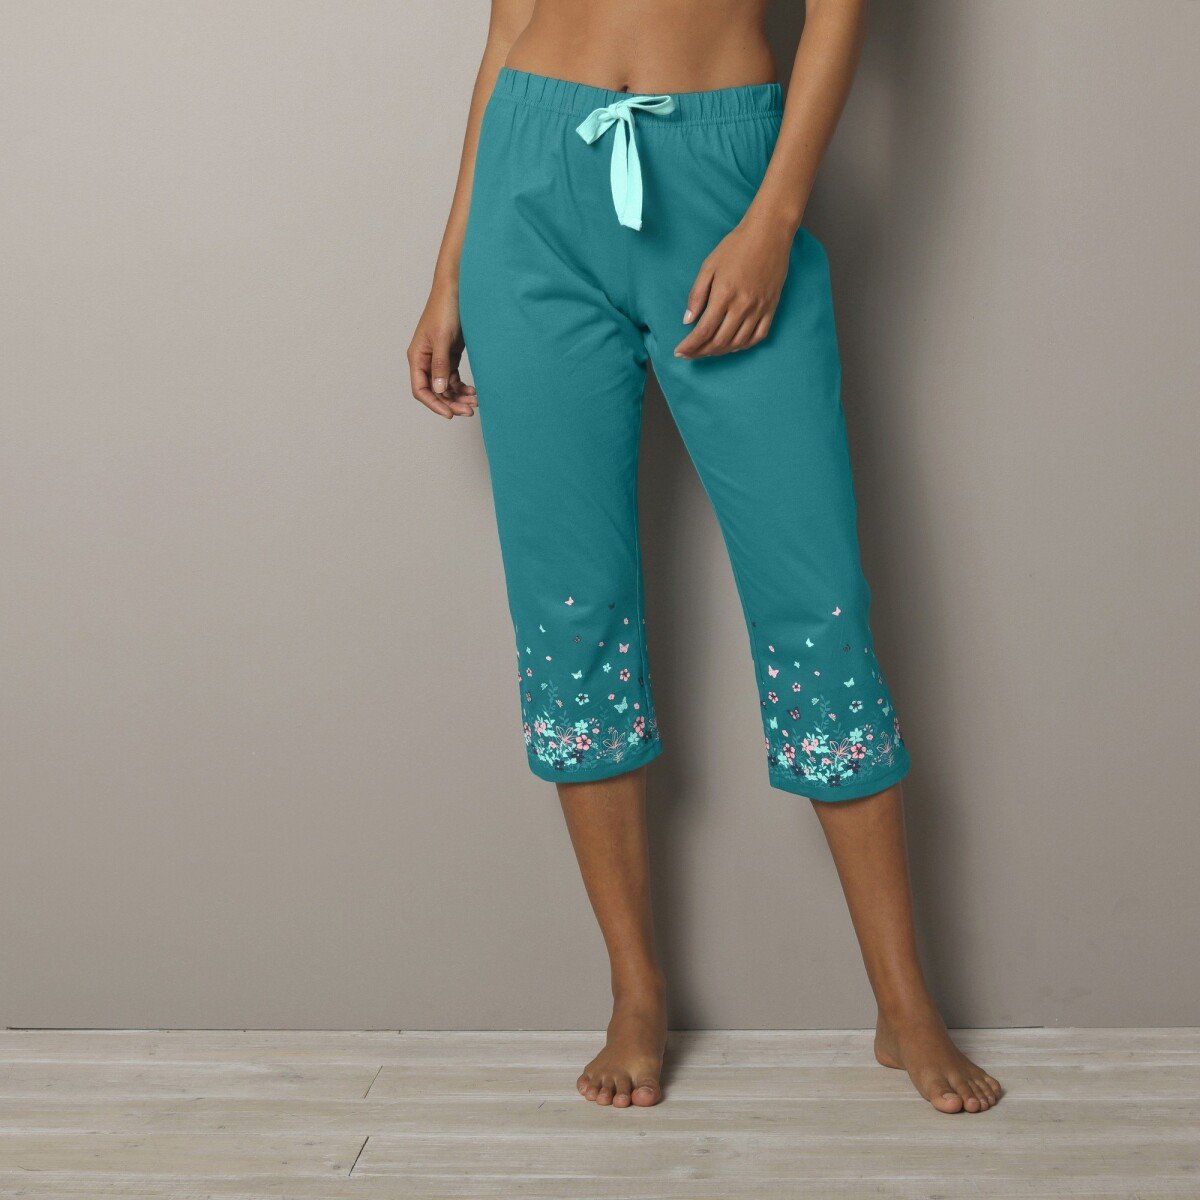 3 4 pyžamové nohavice s potlačou kvetín na koncoch nohavíc smaragdová 34 36